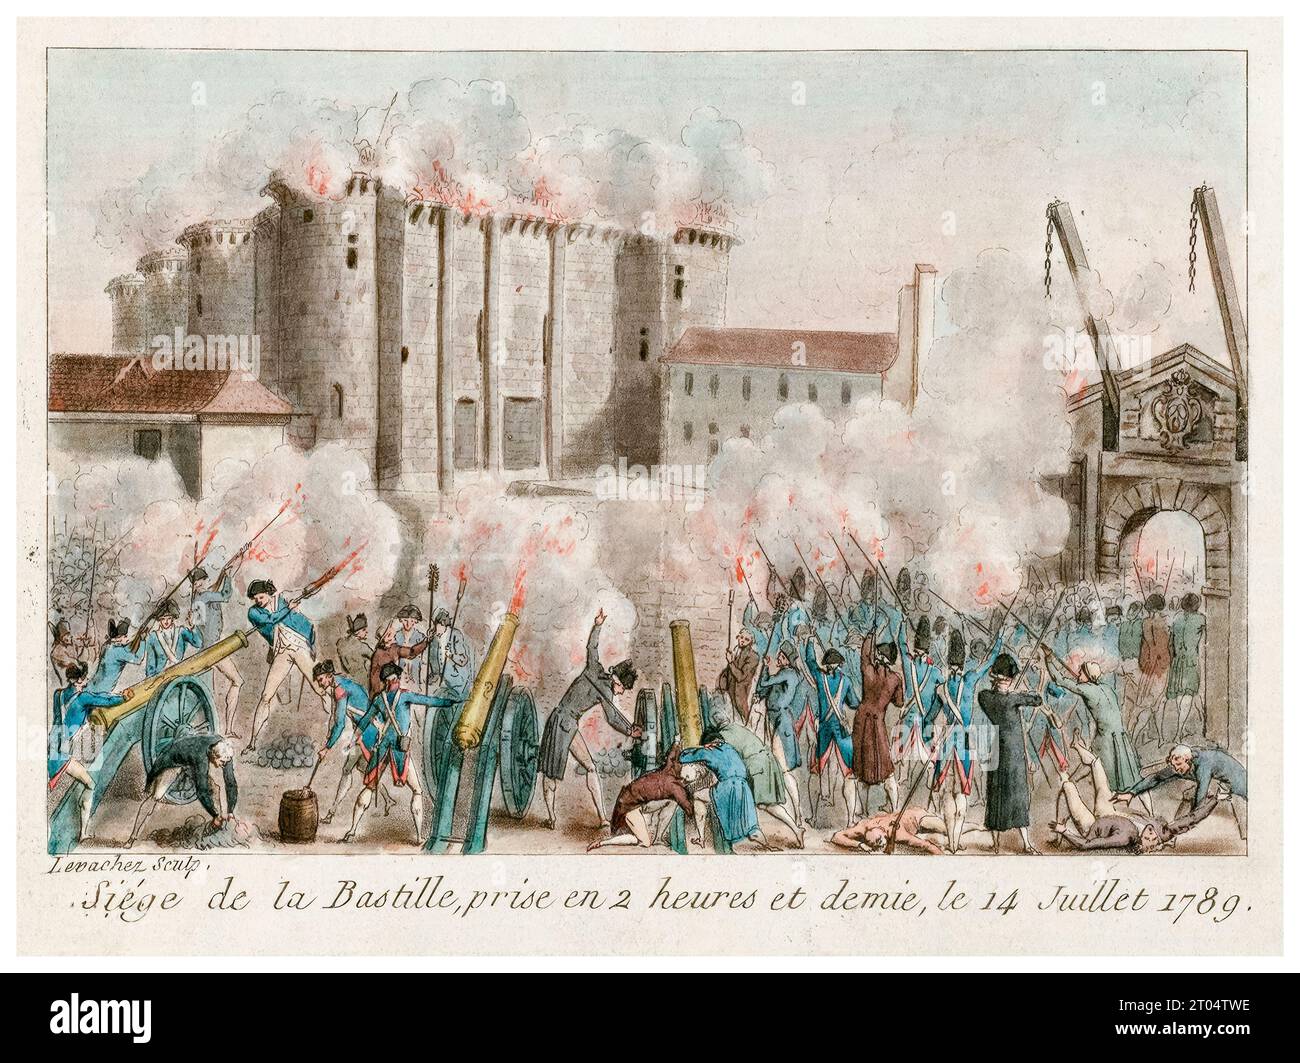 Sturm auf die Bastille, aufgenommen in zweieinhalb Stunden, 14. Juli 1789, handkolorierter Kupferstich von Charles-Francois-Gabriel Le Vachez, 1789 Stockfoto